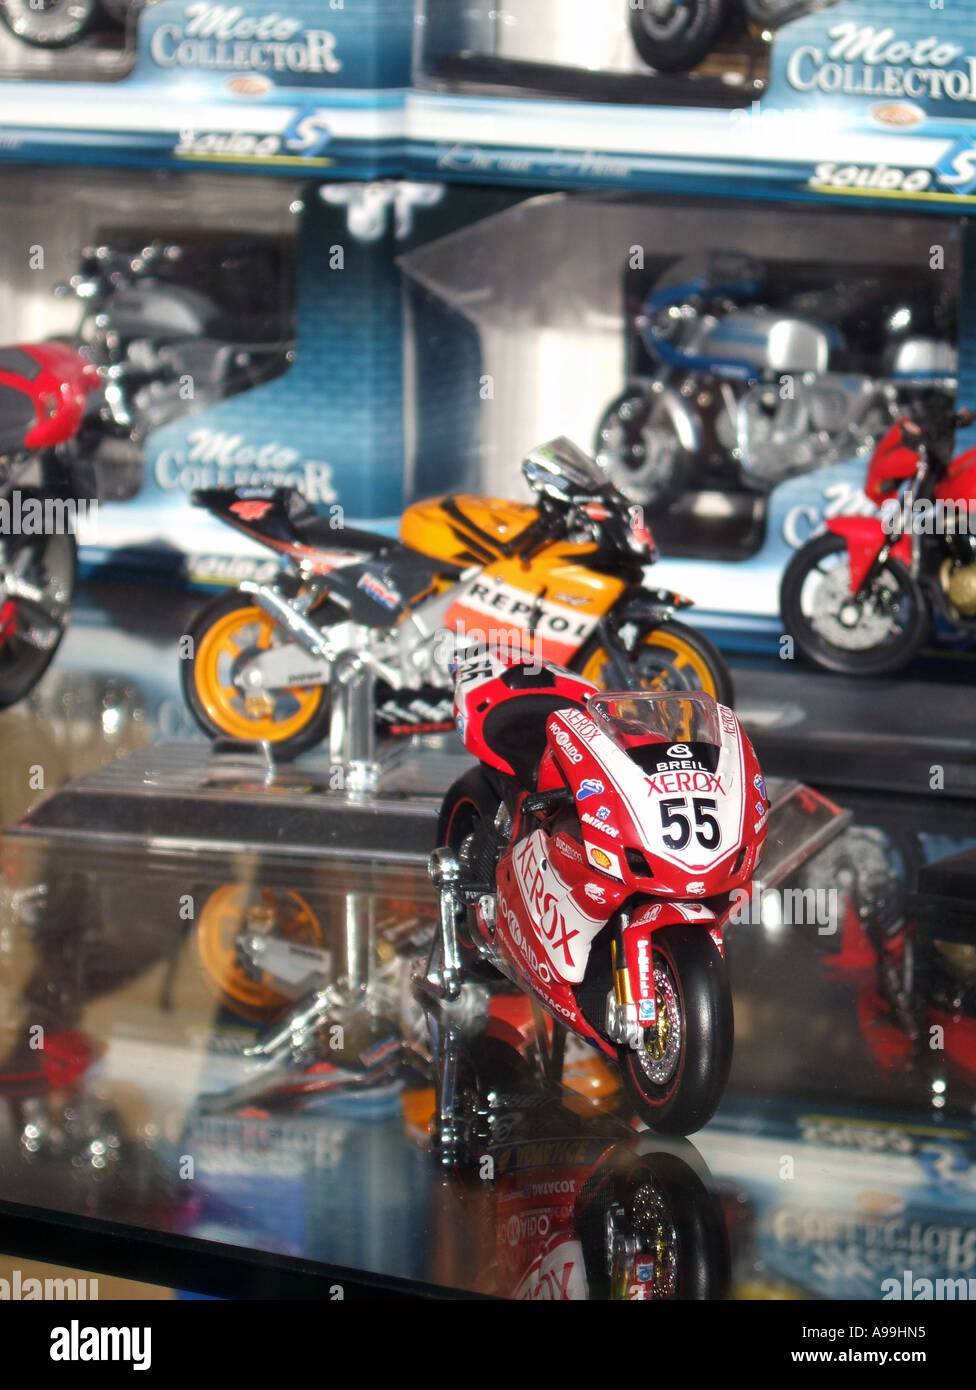 Motos de carreras de GP juguetes en miniatura en escaparate